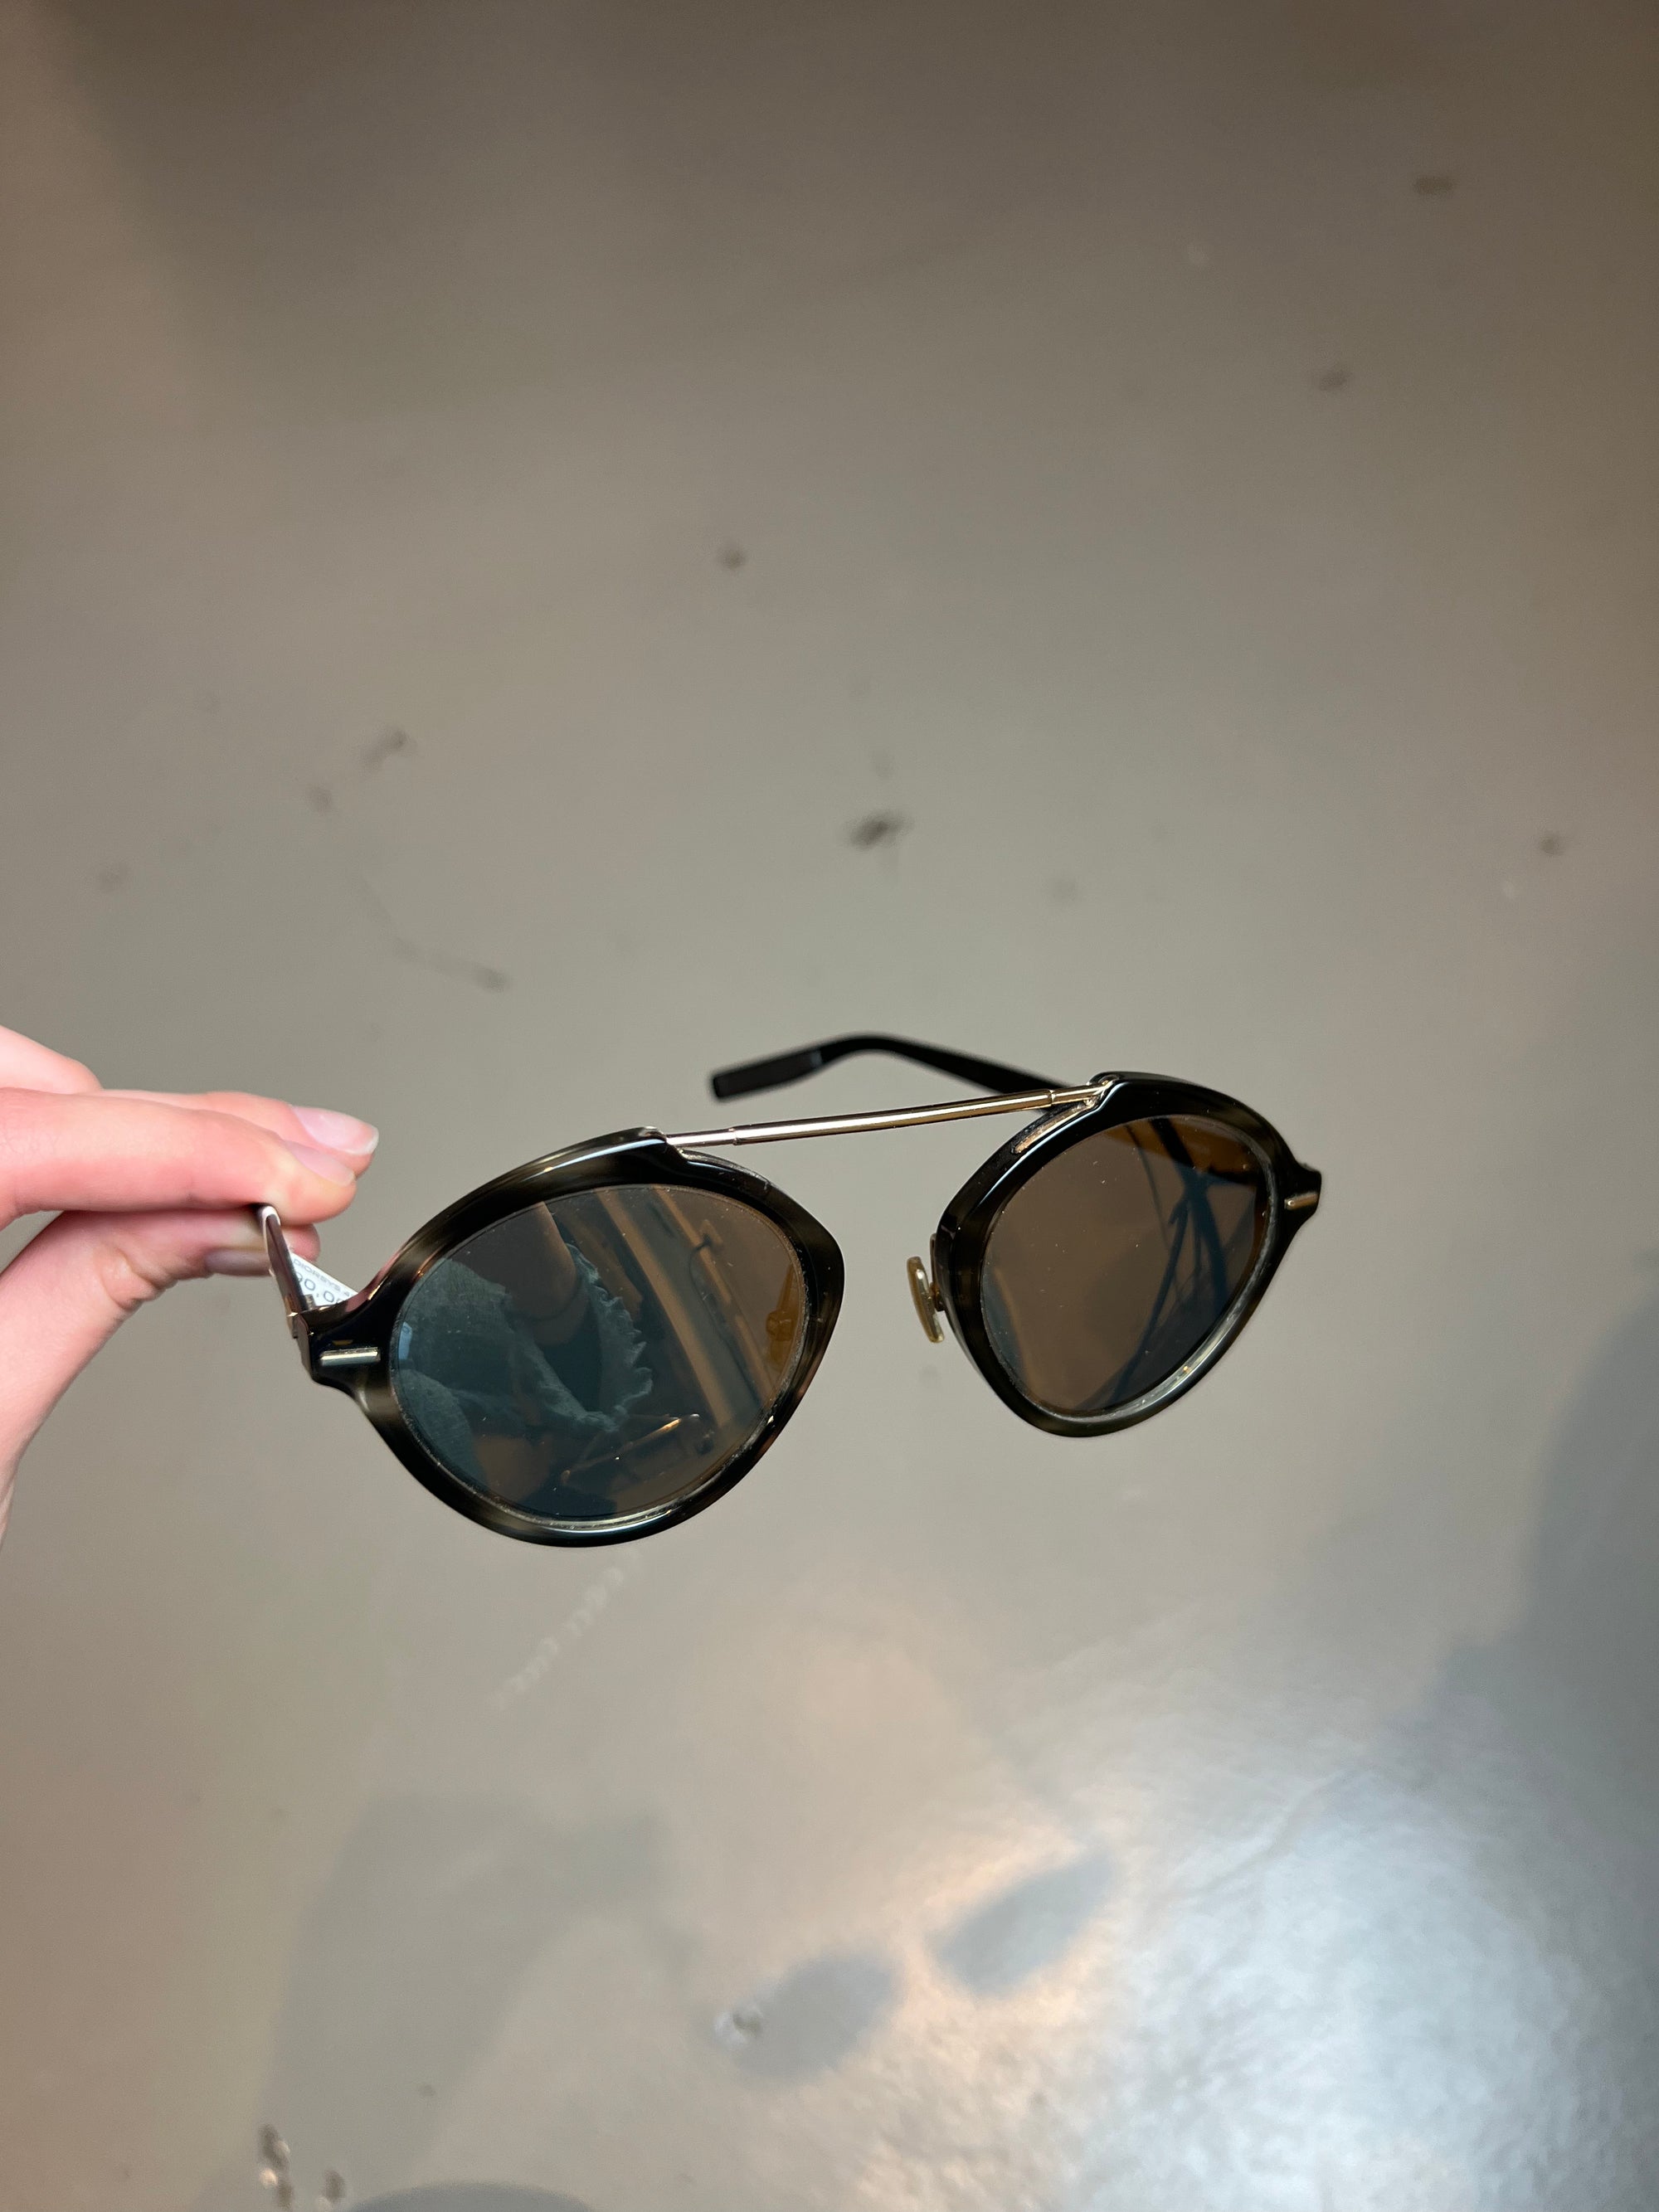 Produktbild einer Christian Dior Sonnenbrille vor grauem Hintergrund.